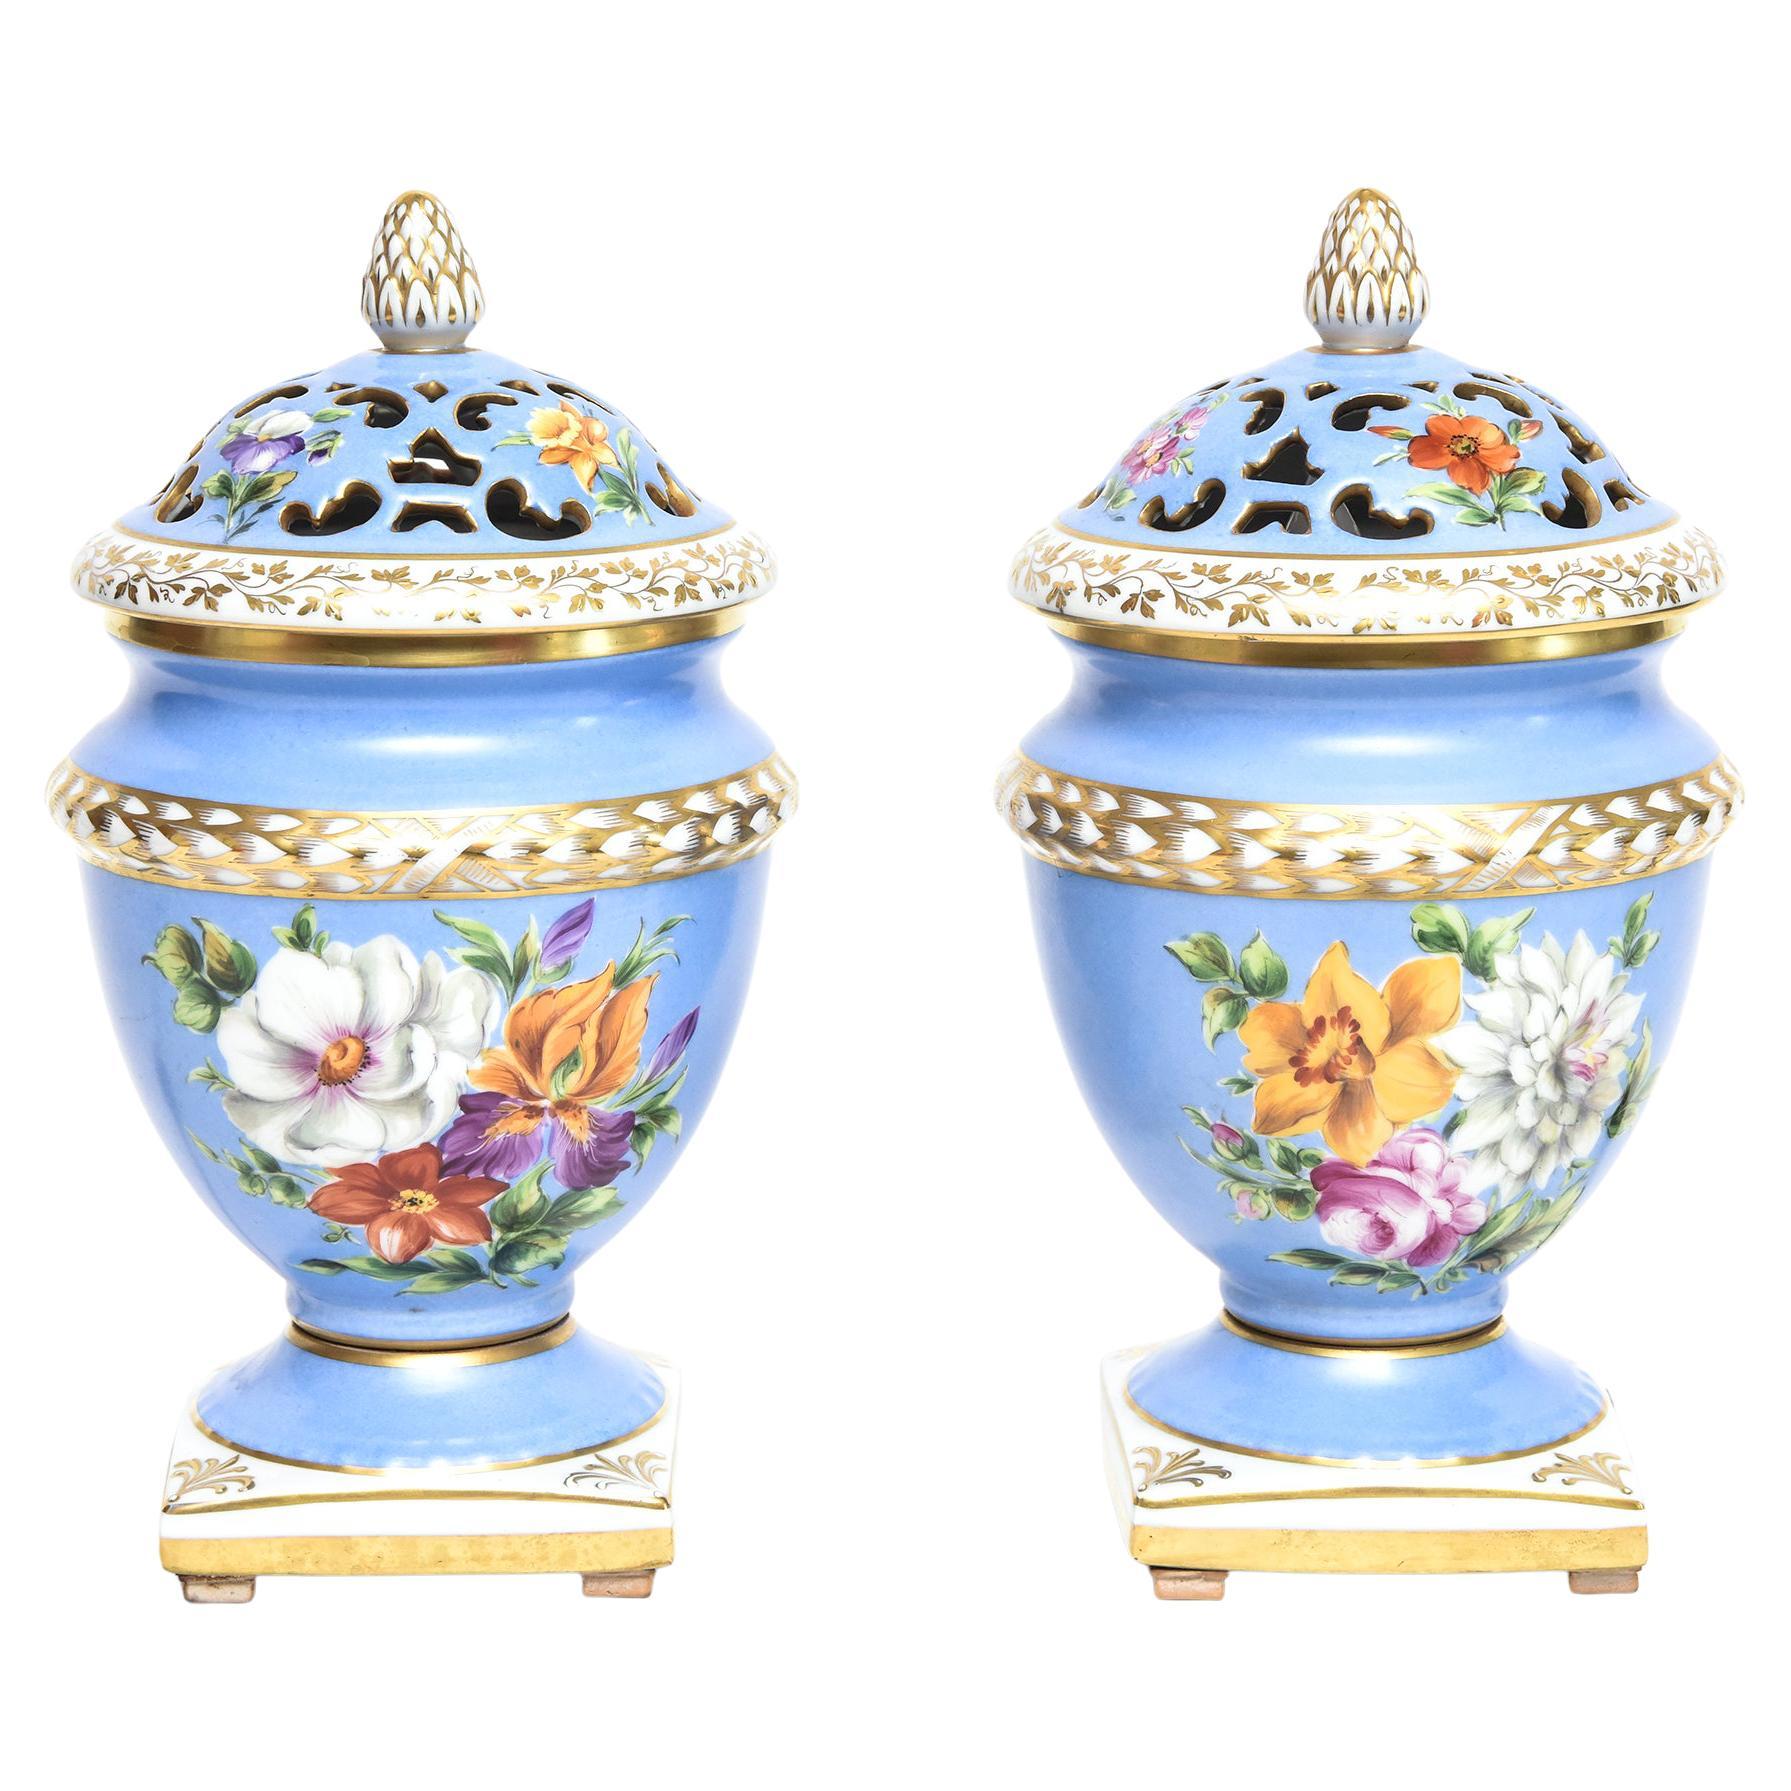 Pair of Le Tallec Paris Floral Blue Gilt Porcelain Pot Pourri Perfume Urns Lamps For Sale